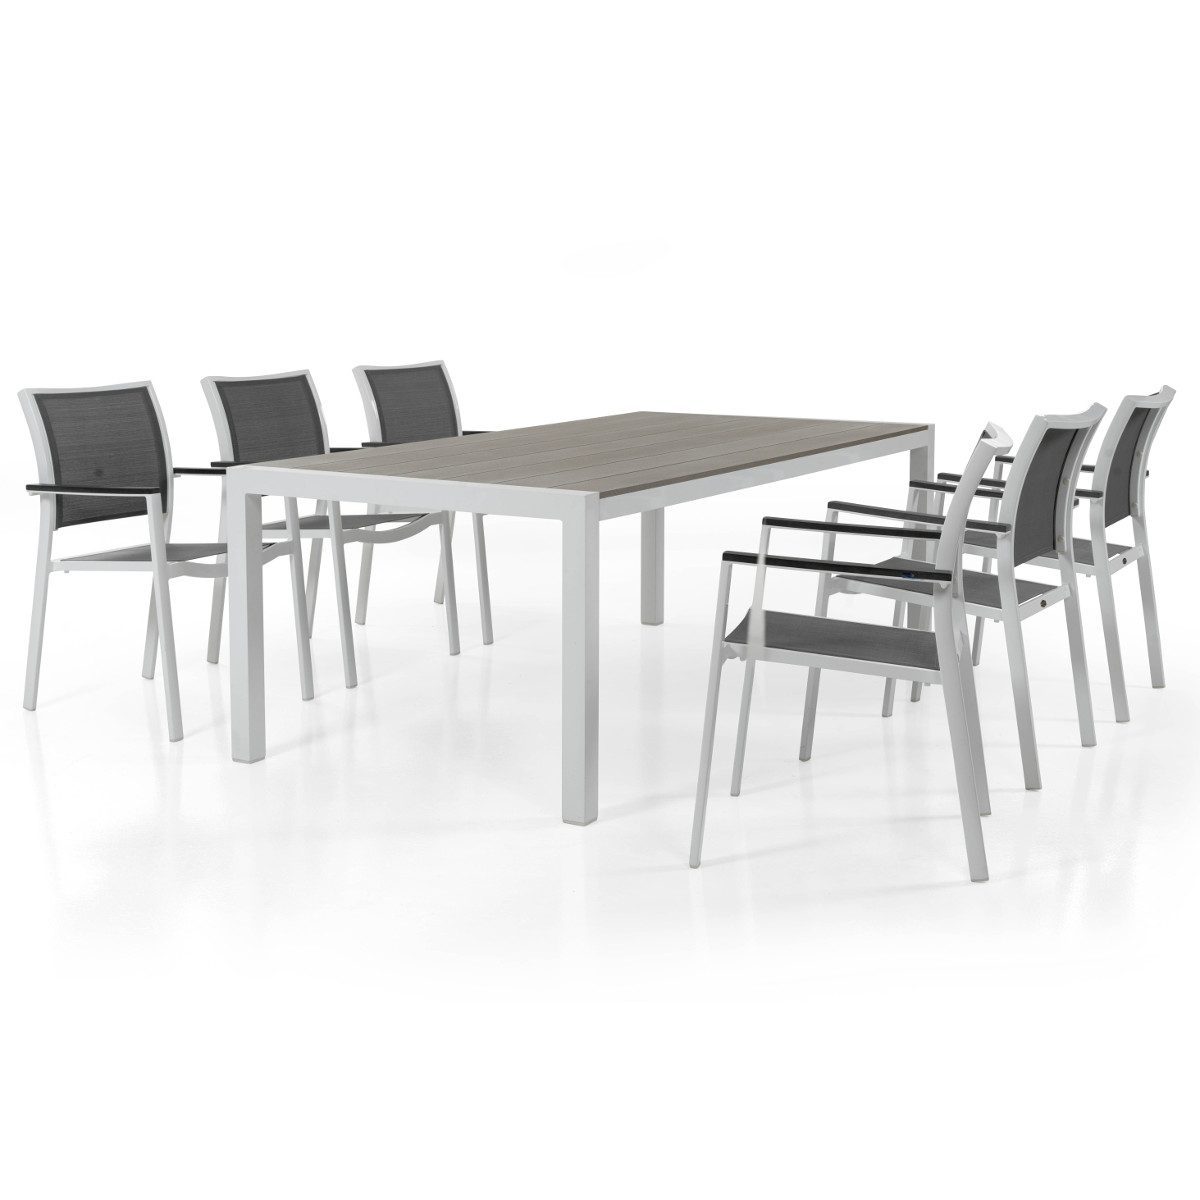 Scilla karmstol i vit aluminium och grå textileneväv tillsammans med Crescendo matbord i vitt och taupe.